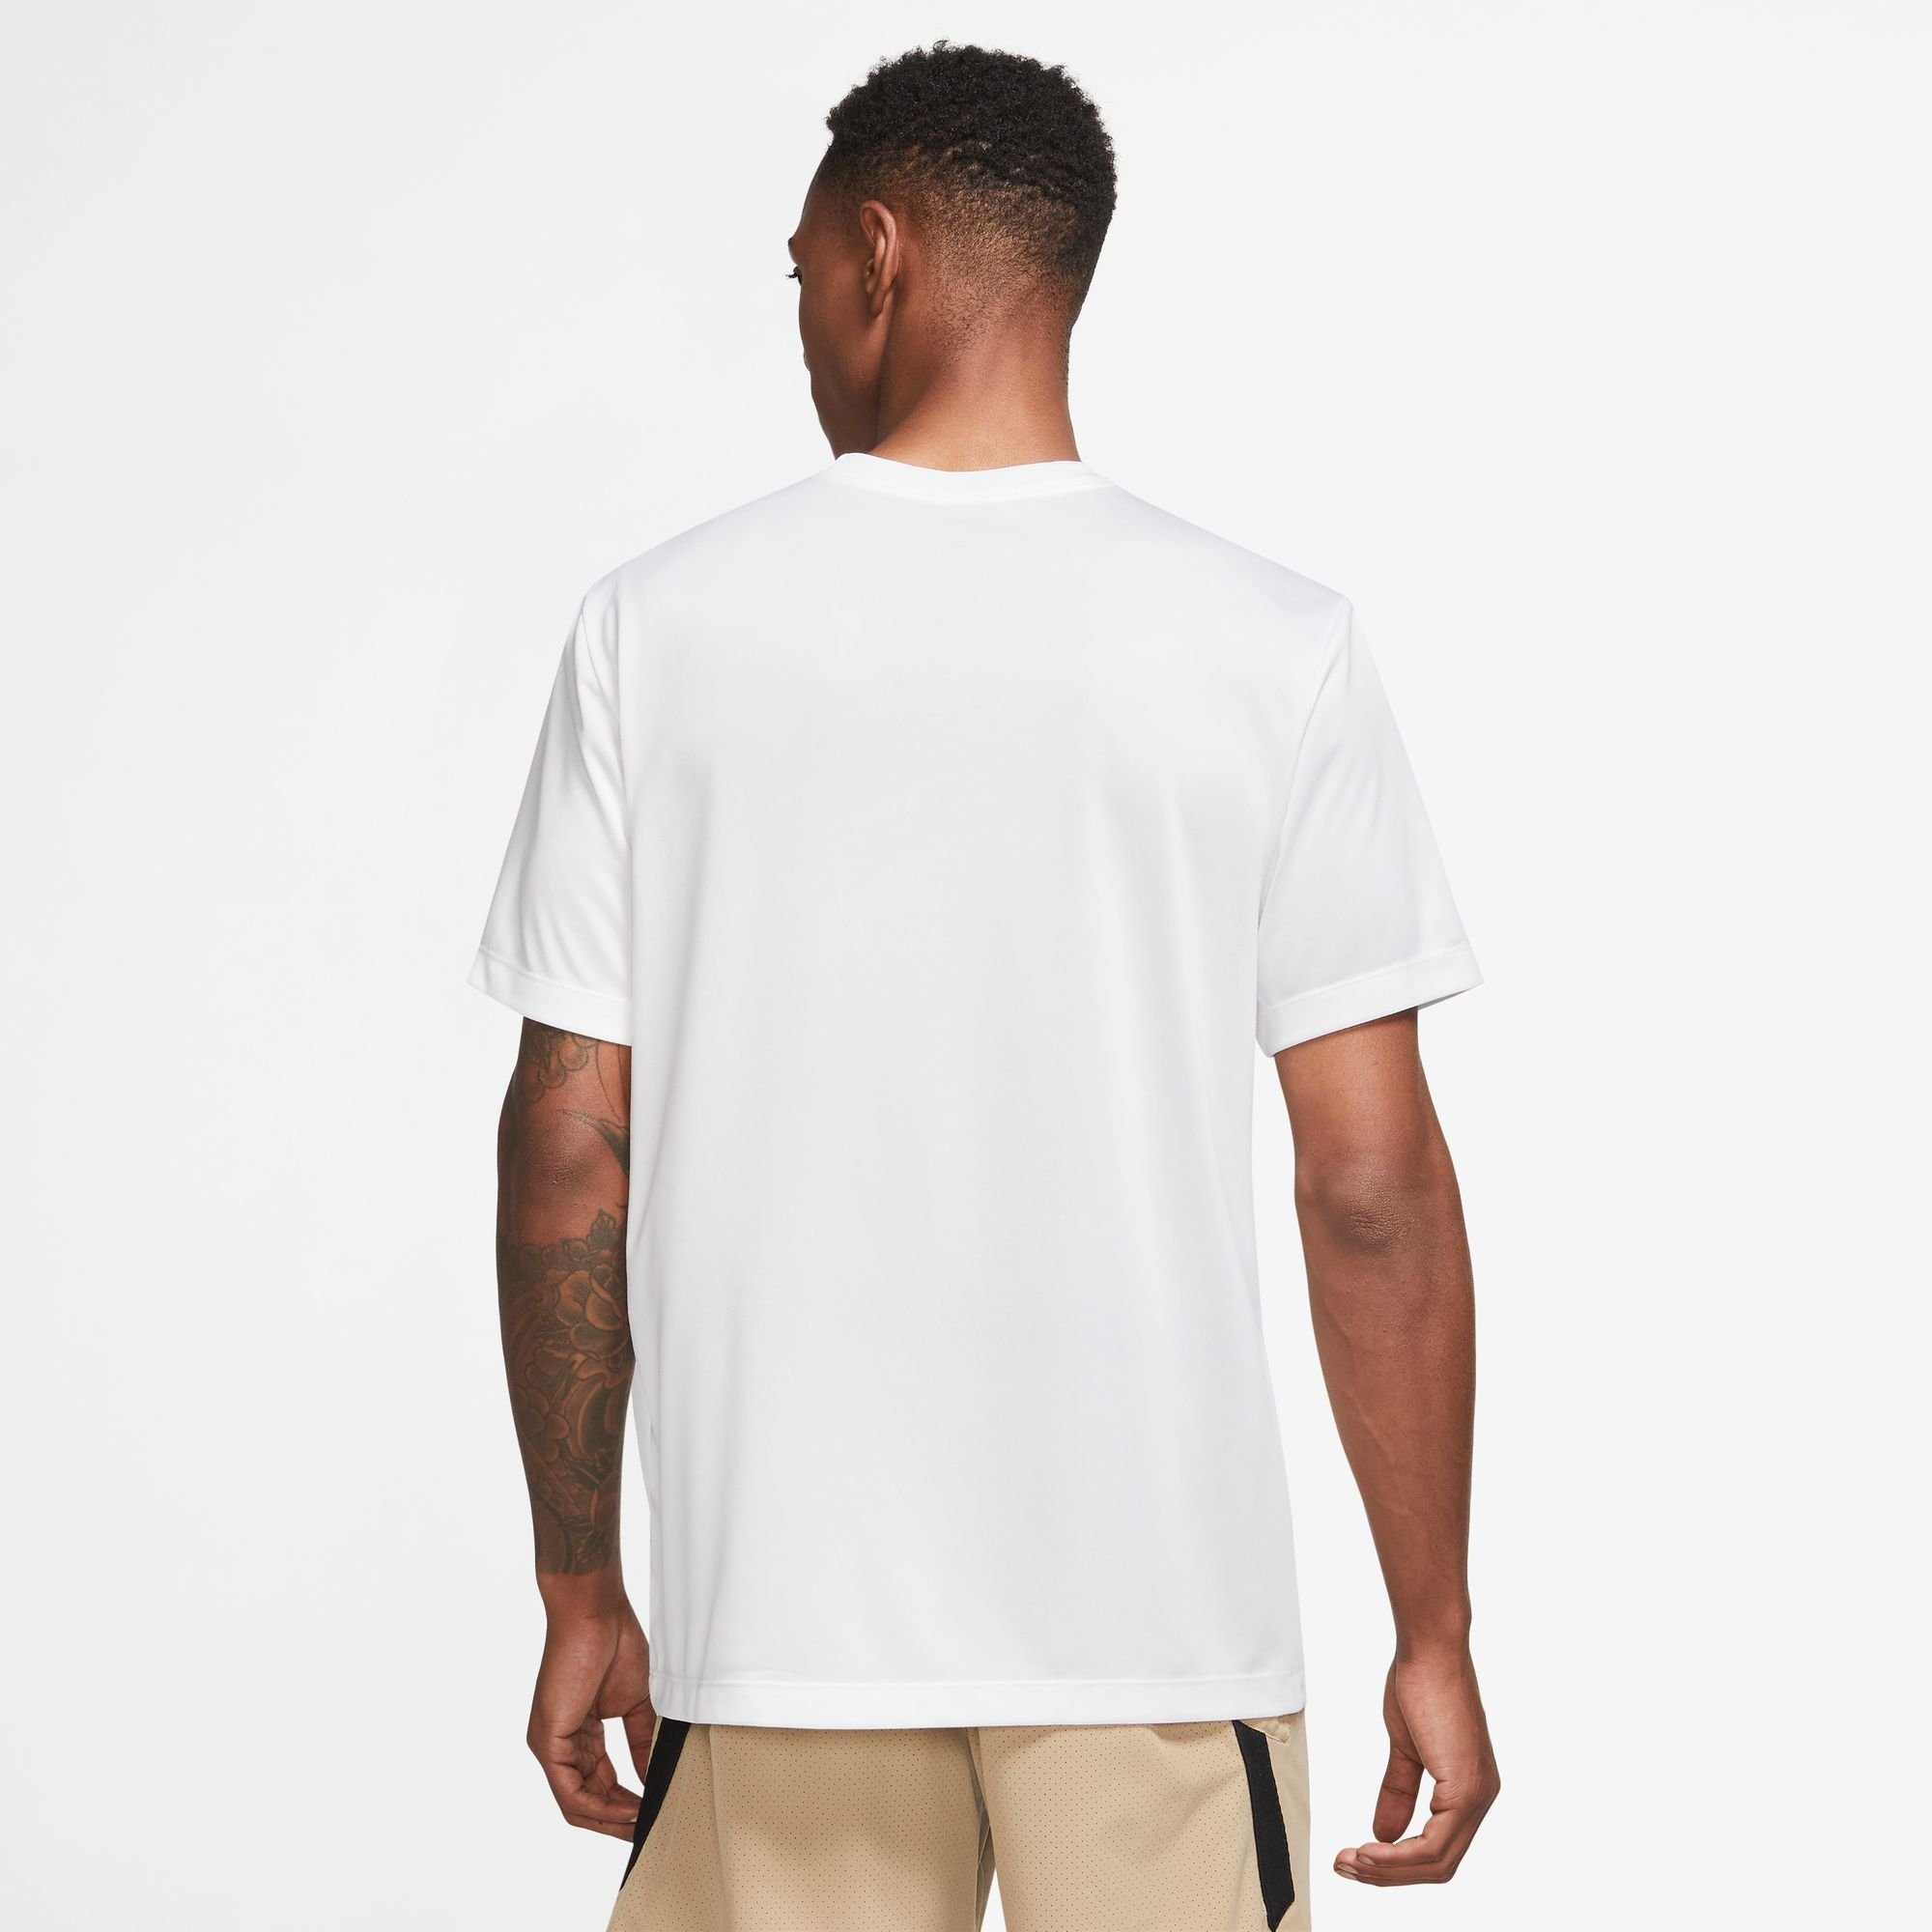 Trainingsshirt MEN'S T-SHIRT LEGEND DRI-FIT Nike FITNESS WHITE/BLACK